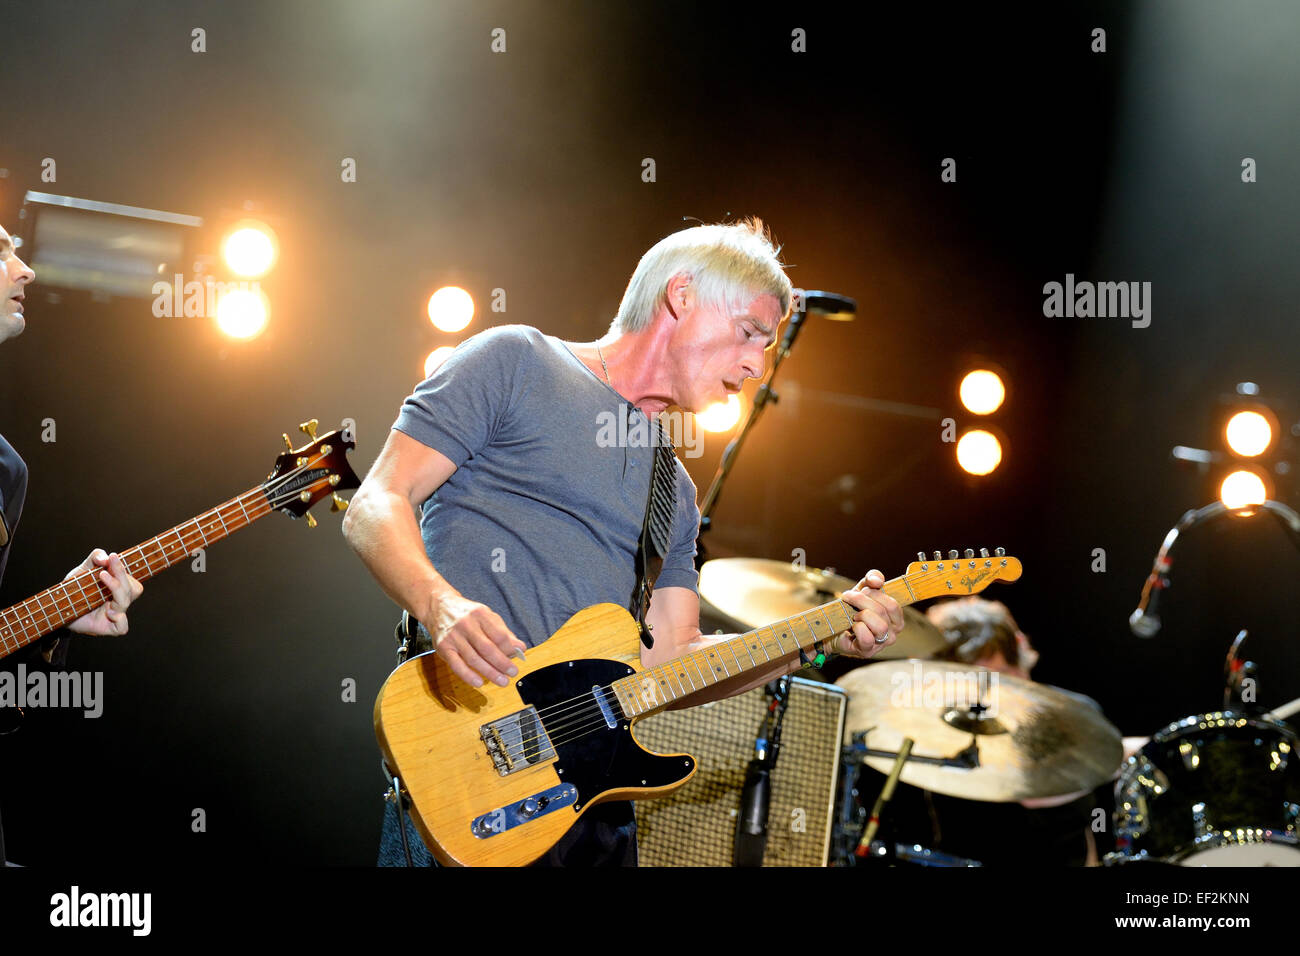 BENICASSIM, ESPAGNE - 18 juillet : Paul Weller (chanteur, auteur-compositeur et musicien) effectue au Festival. Banque D'Images